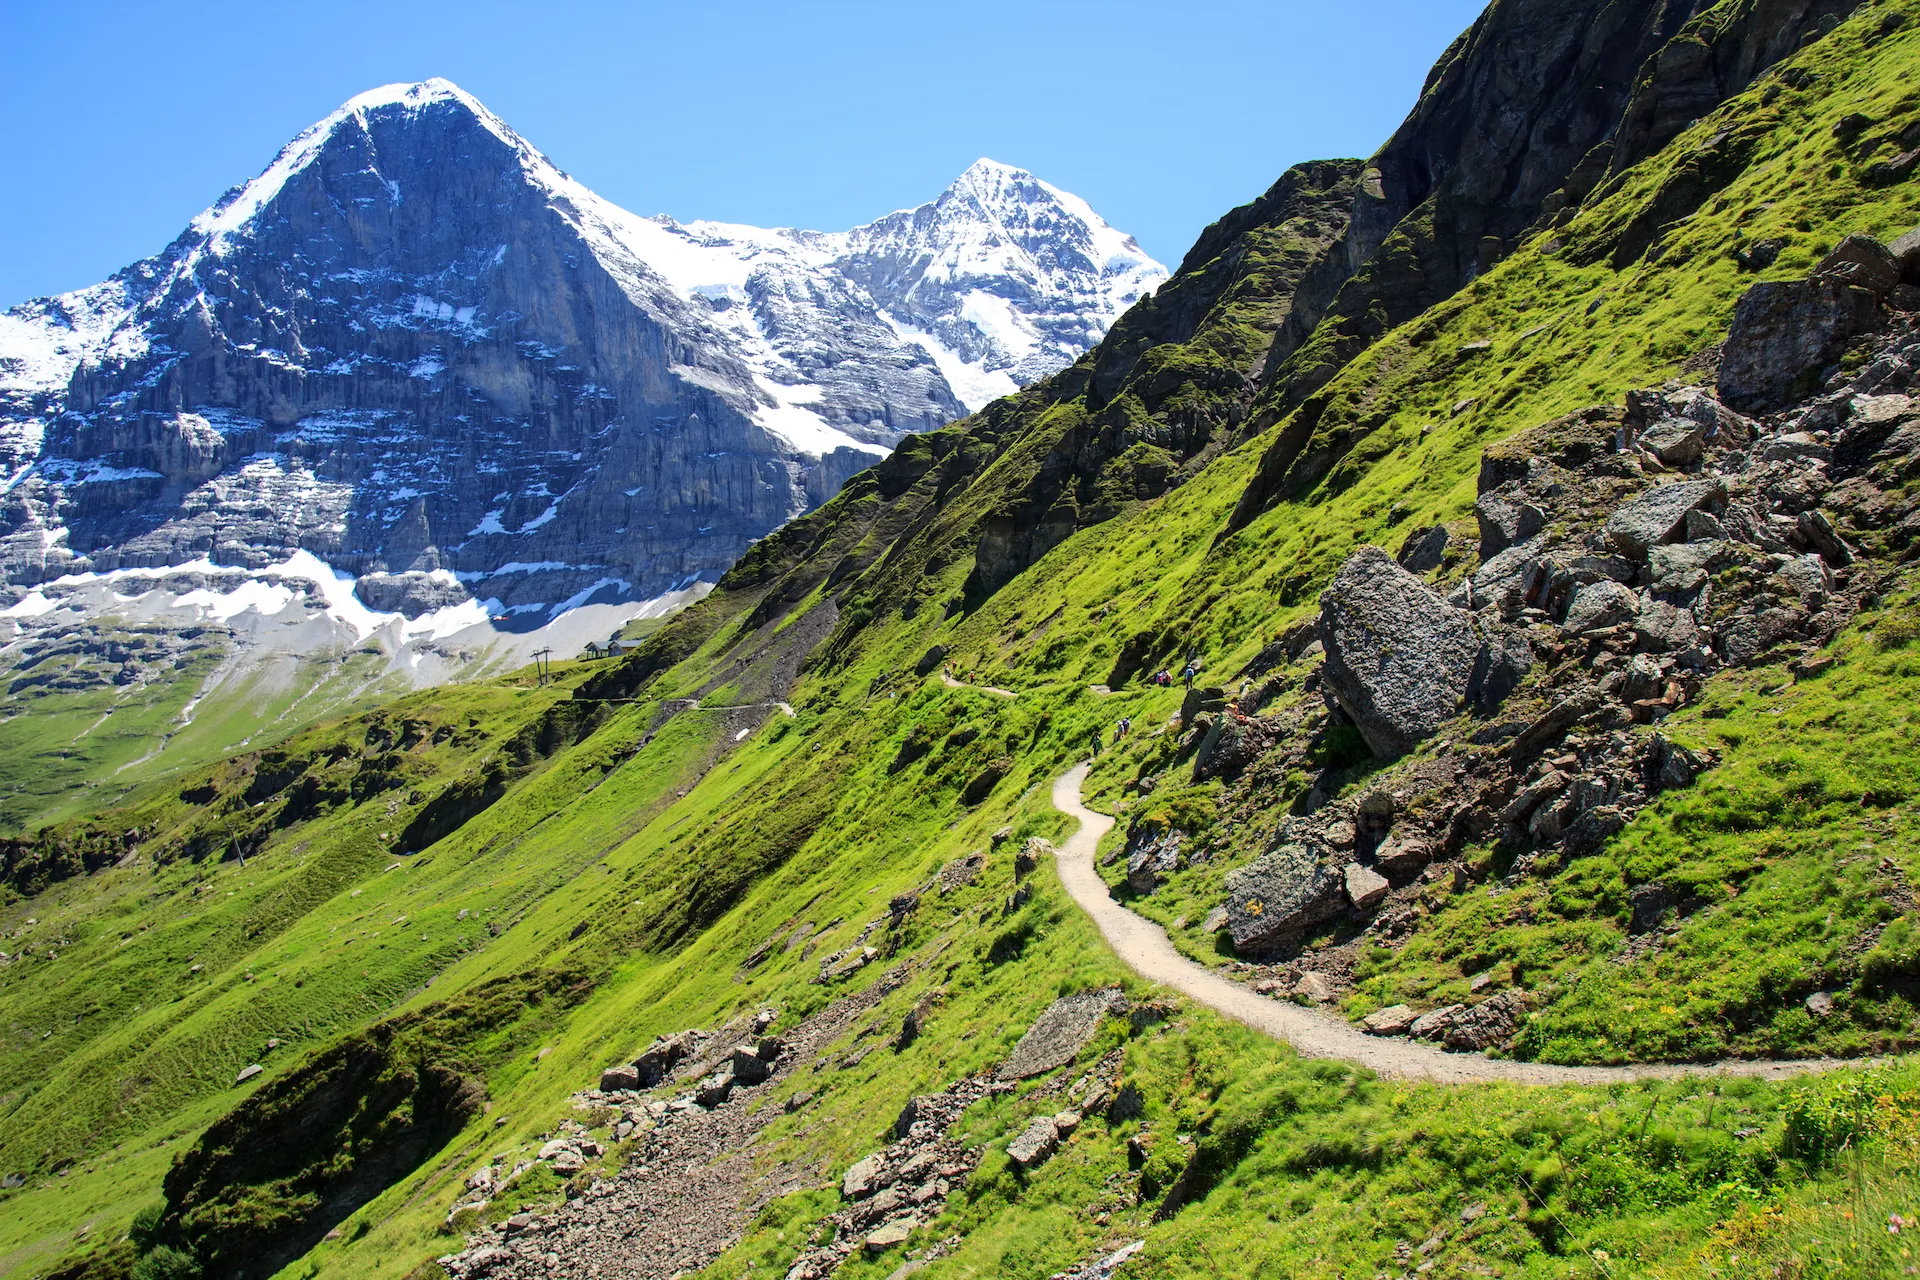 Panoramic trail from Mannlichen to Kleine Scheidegg with Mount Eiger view